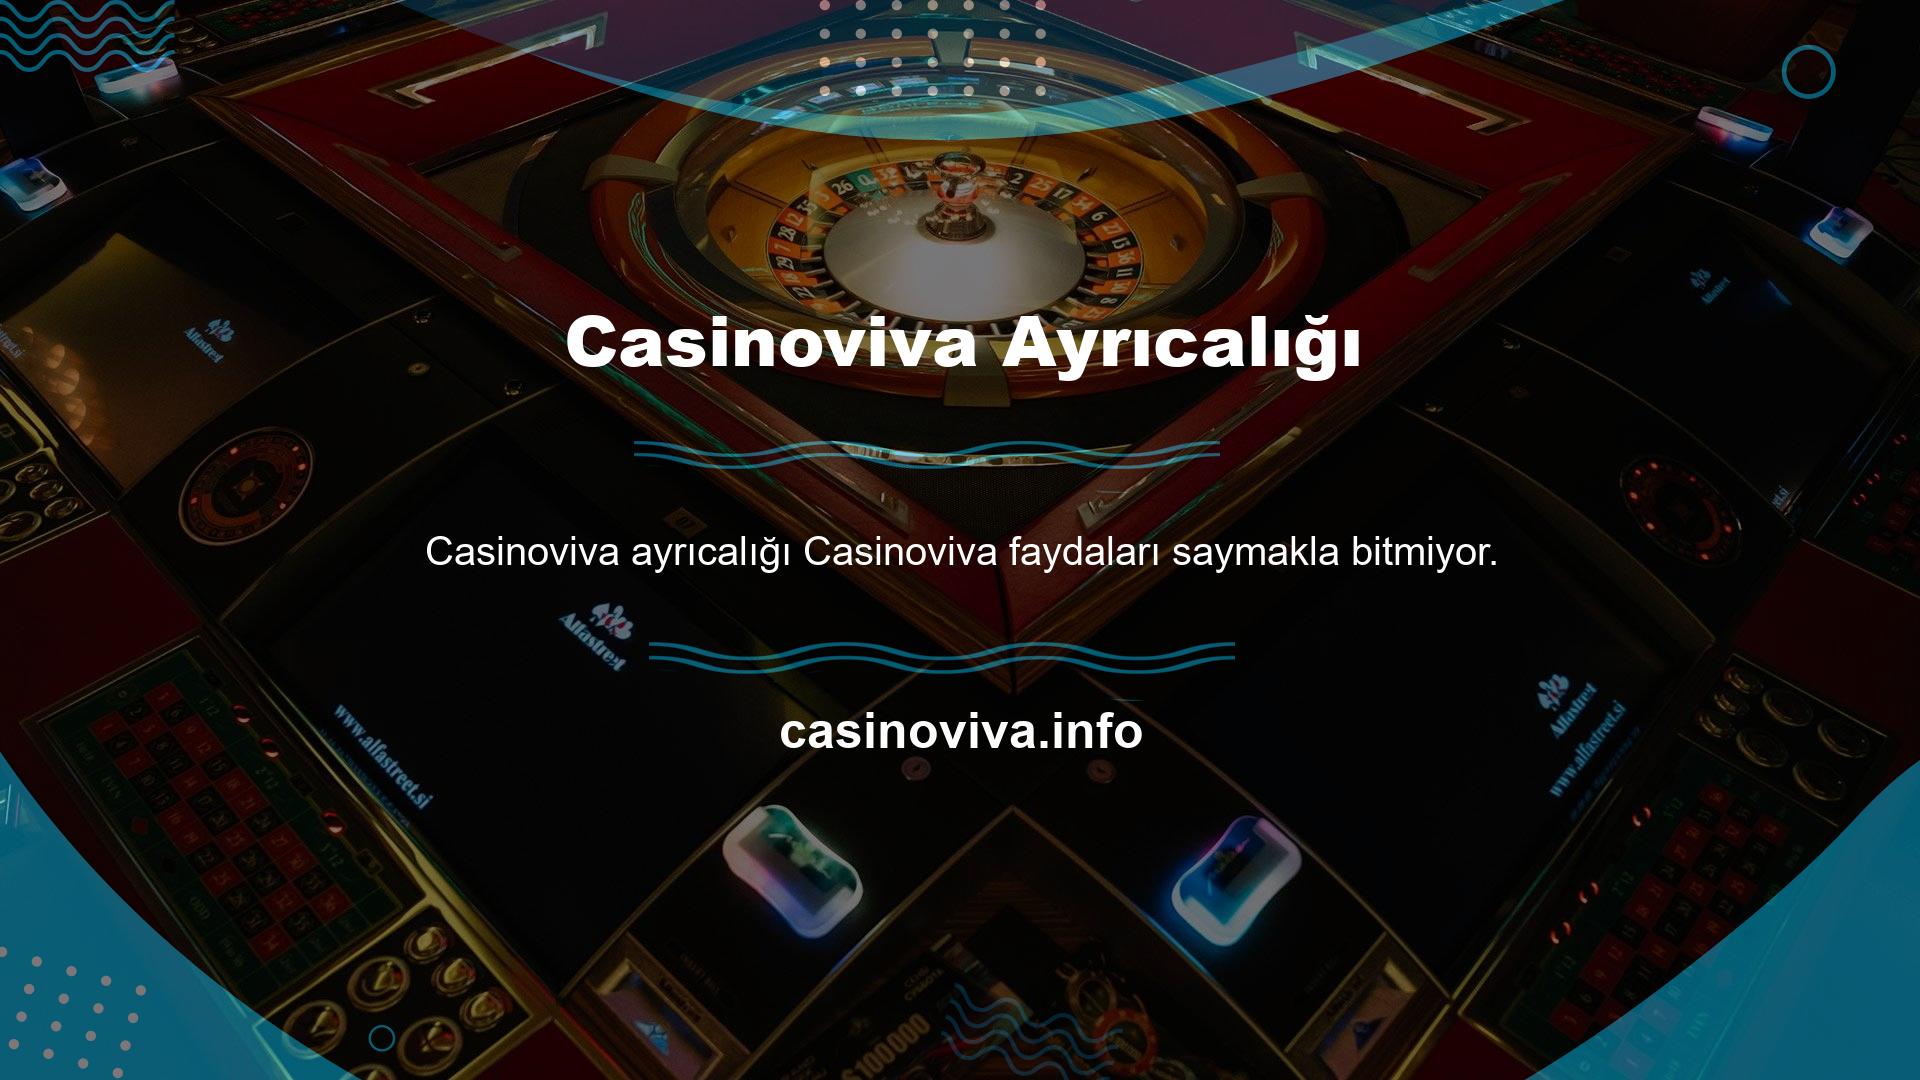 Casinoviva oyun sitesi faaliyettedir